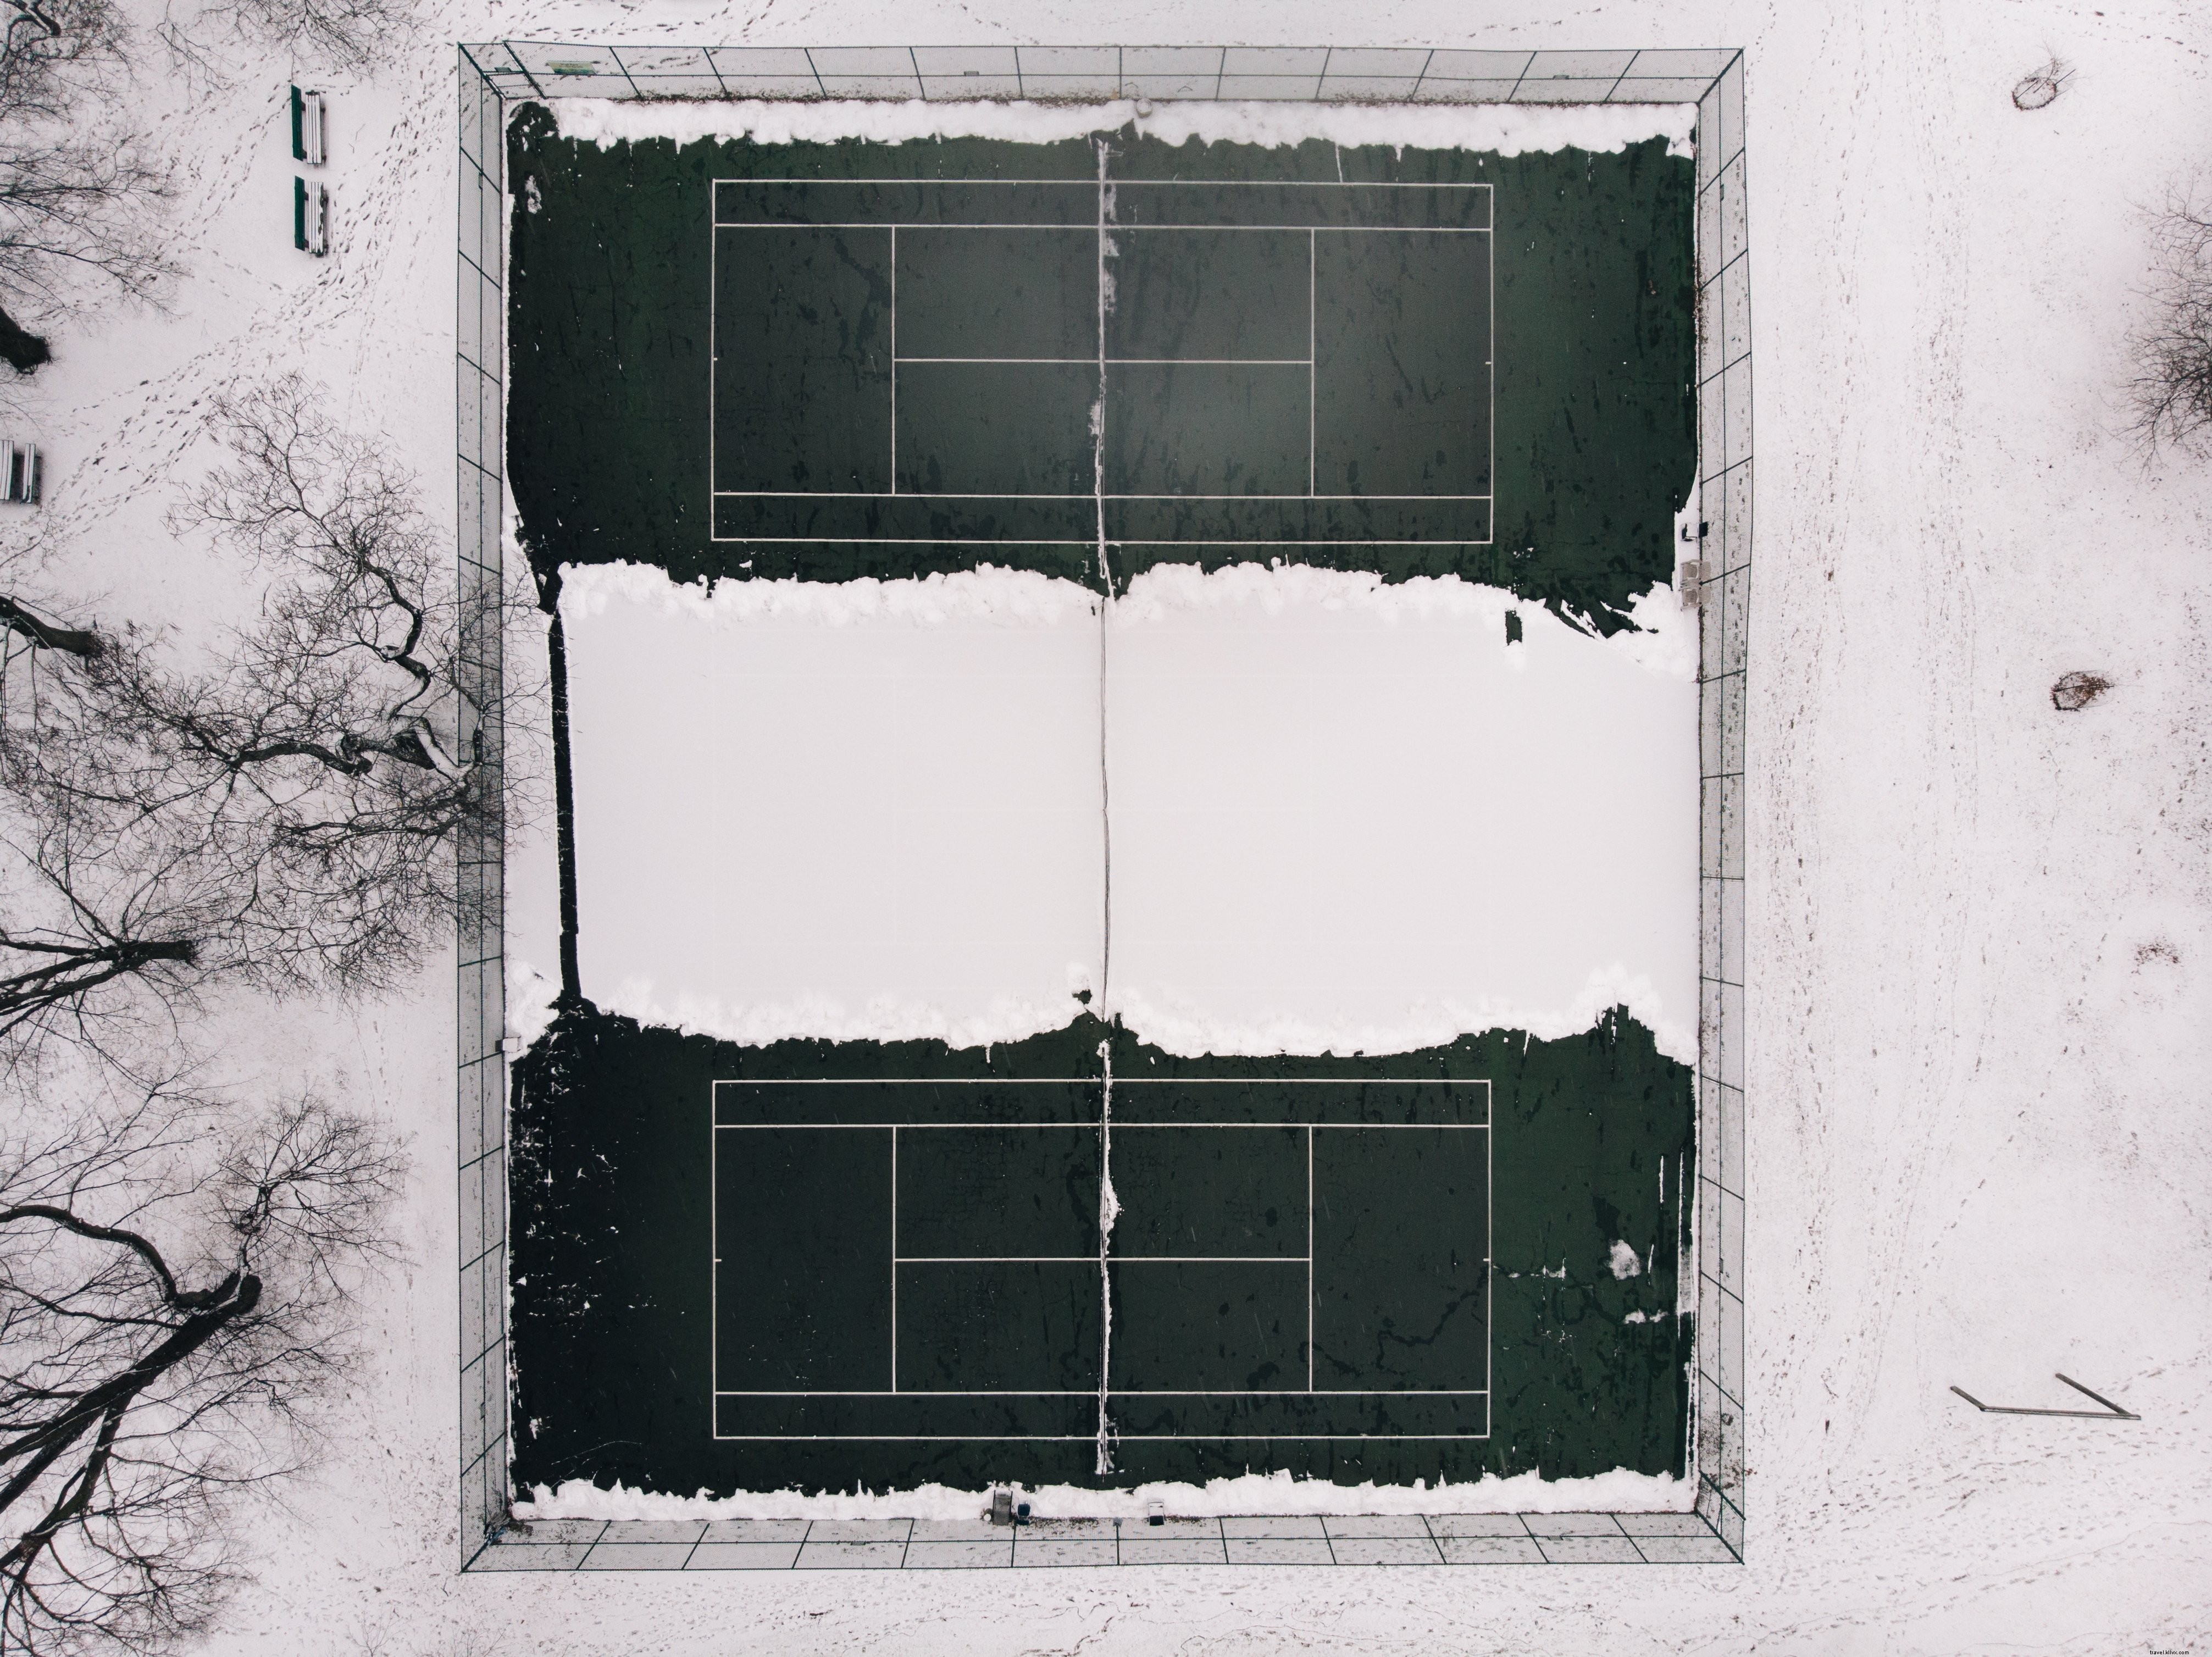 Campi da tennis abbandonati per la stagione invernale Photo